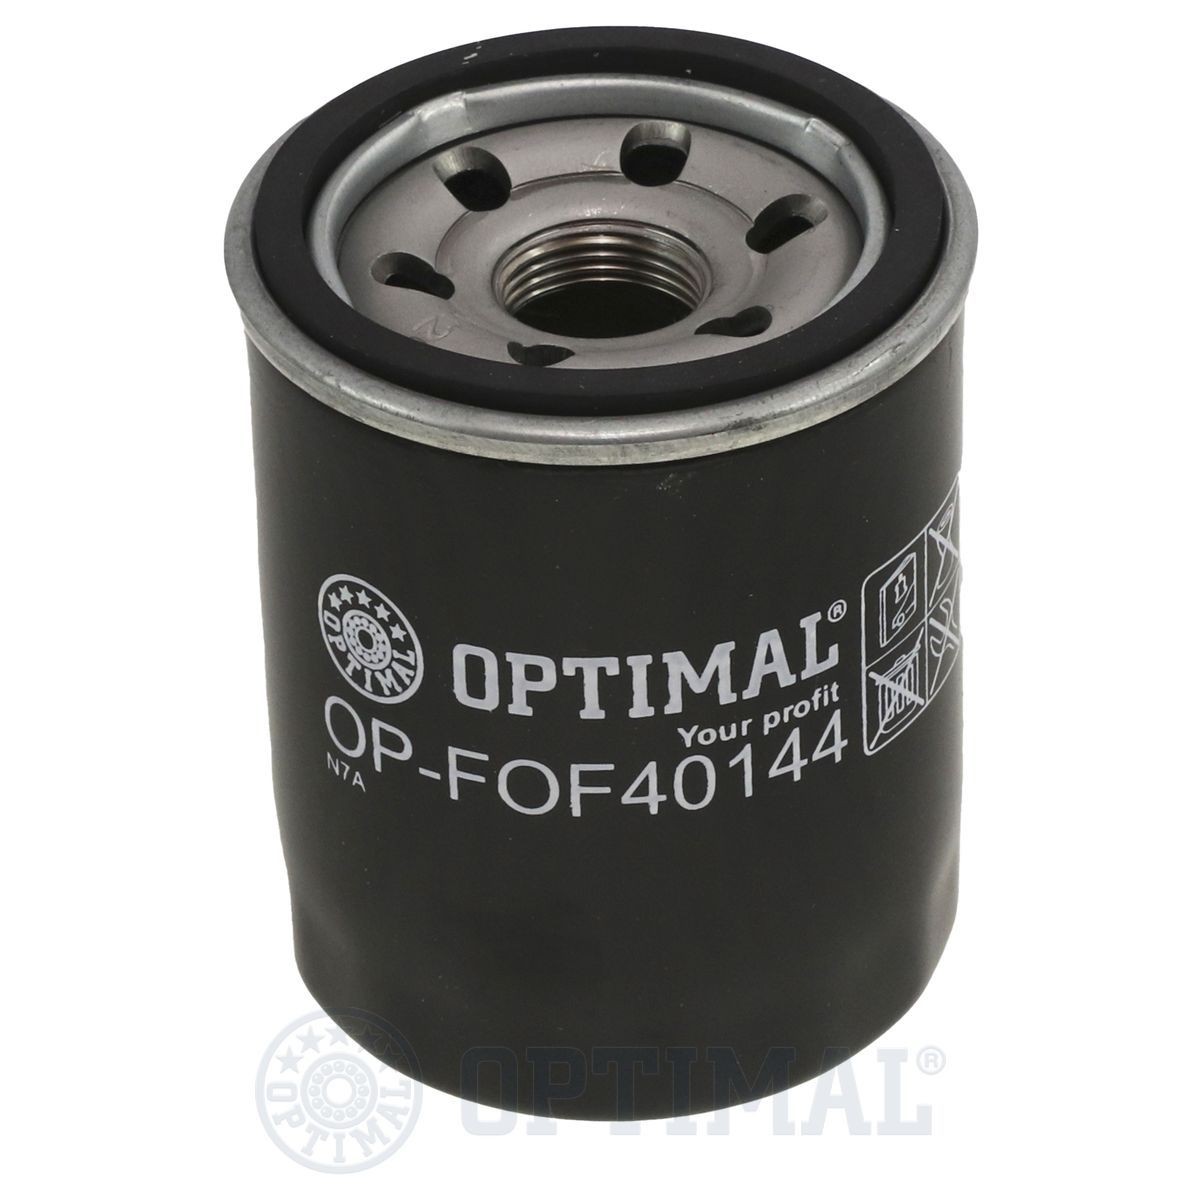 OPTIMAL OP-FOF40144 Filter kit 5016958